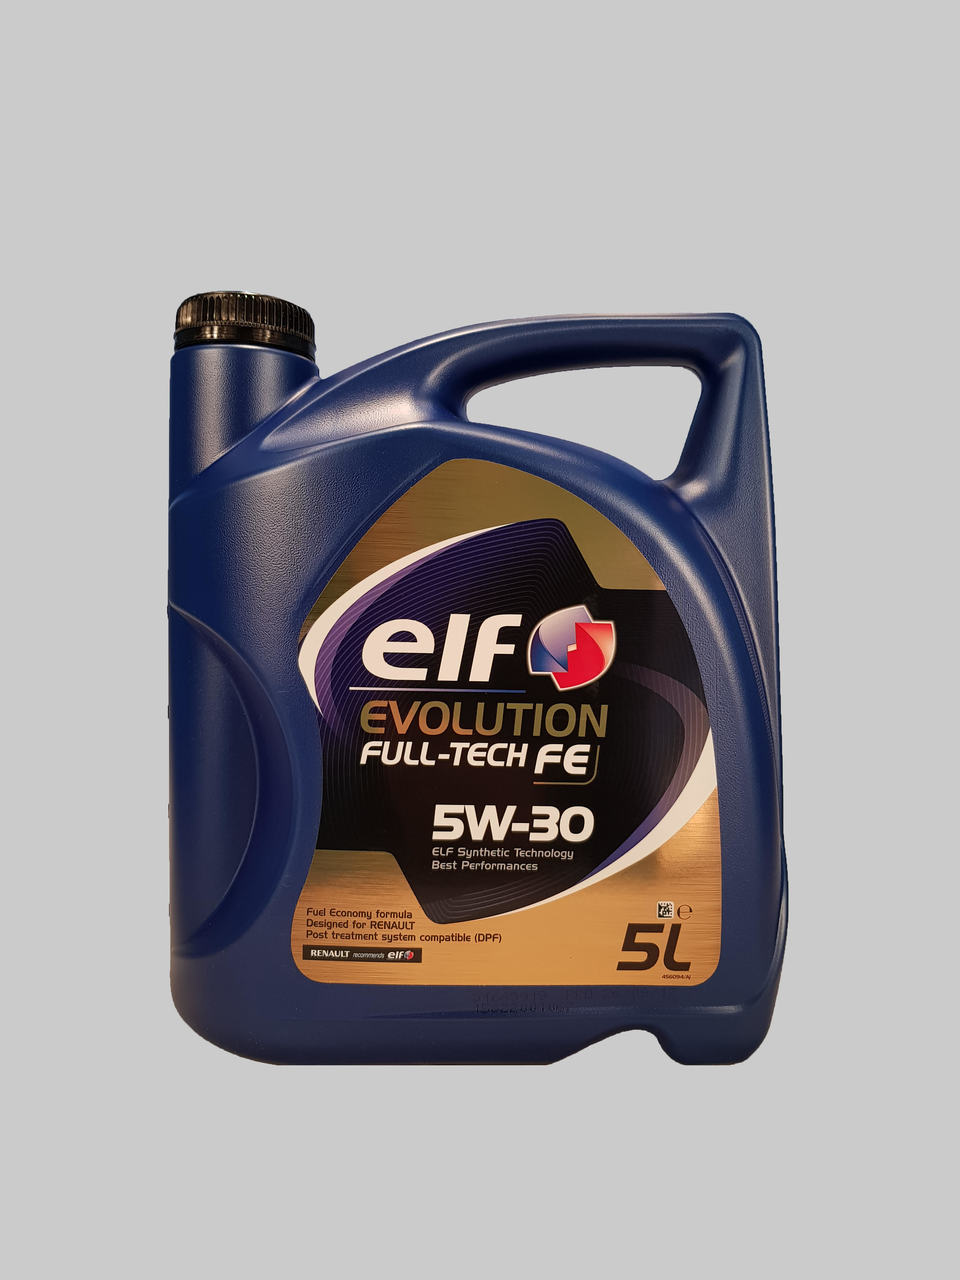 Elf Evolution Fulltech FE 5W-30 5 Liter